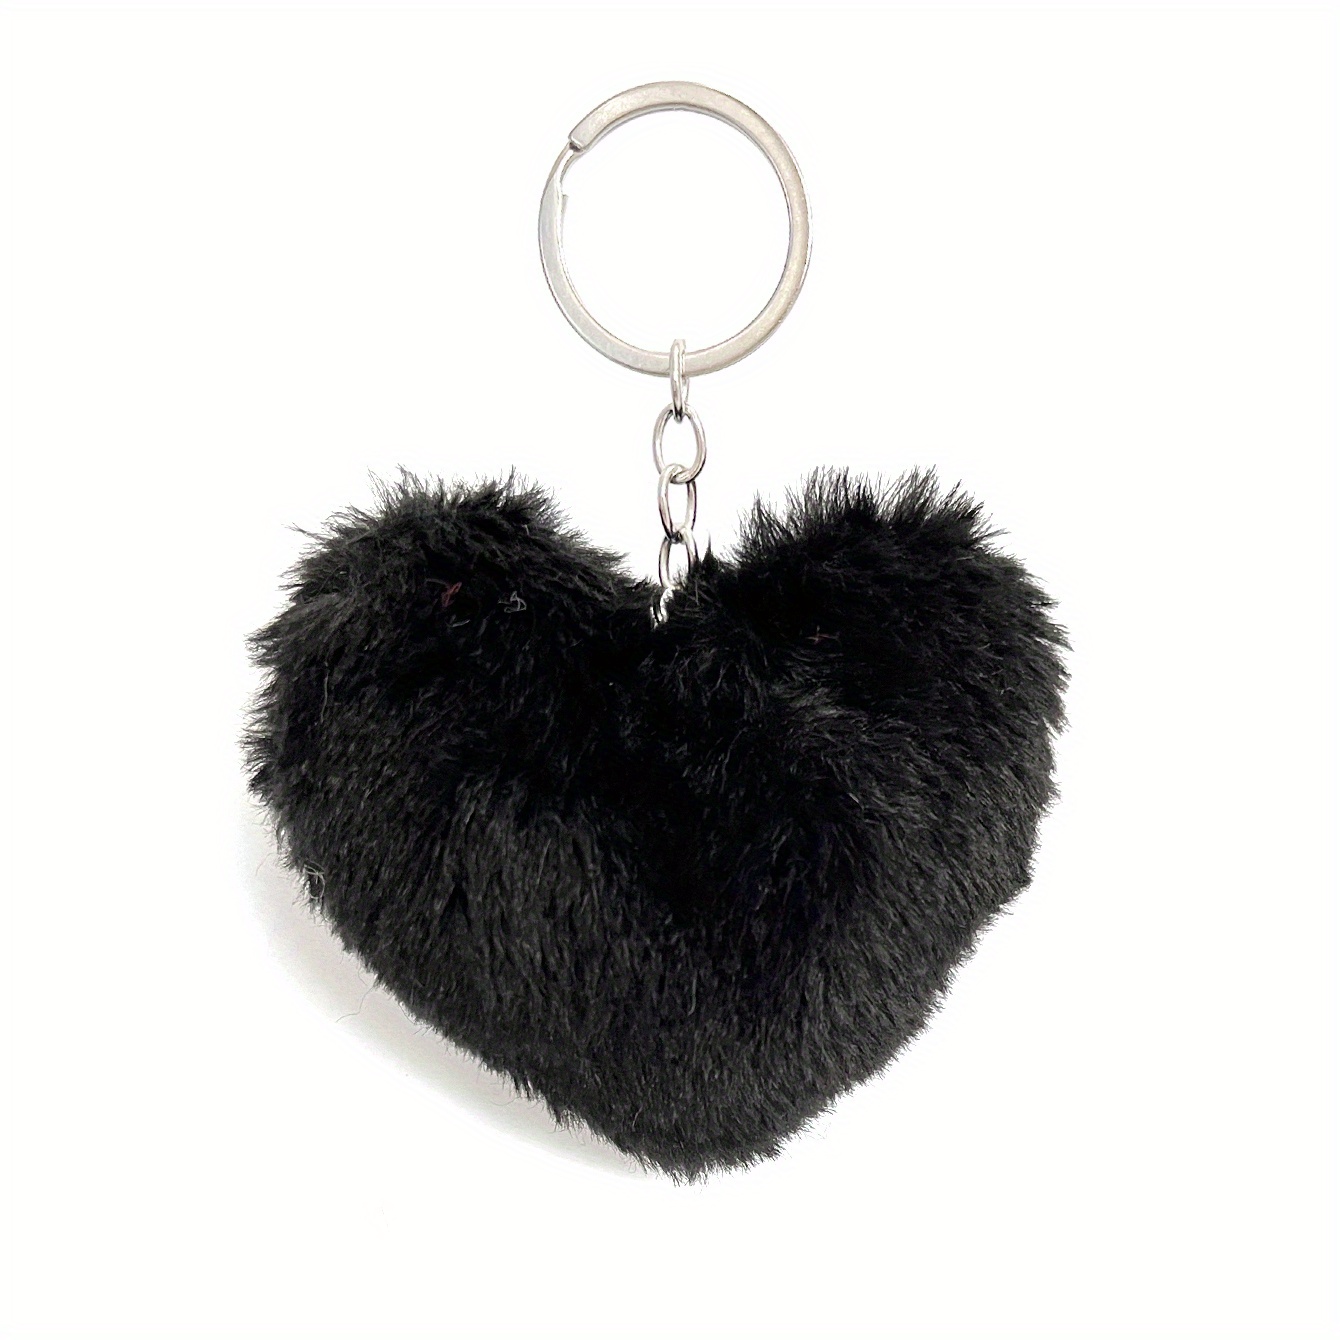 New Plush Heart Pom Pom Keychain - Black